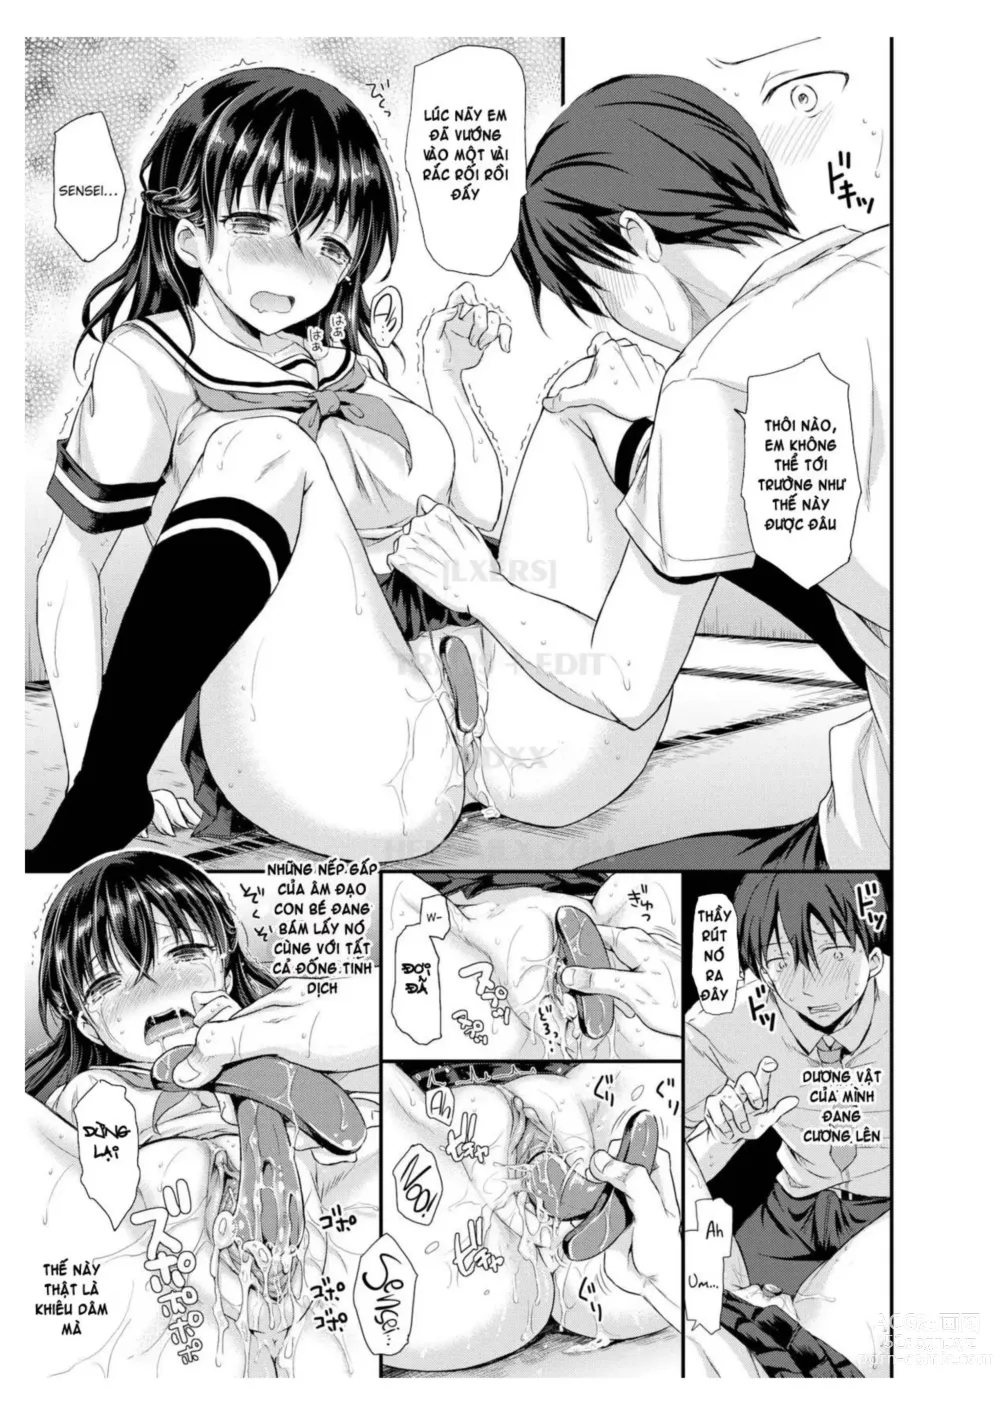 Page 9 of manga Ana no Mukougawa (decensored)